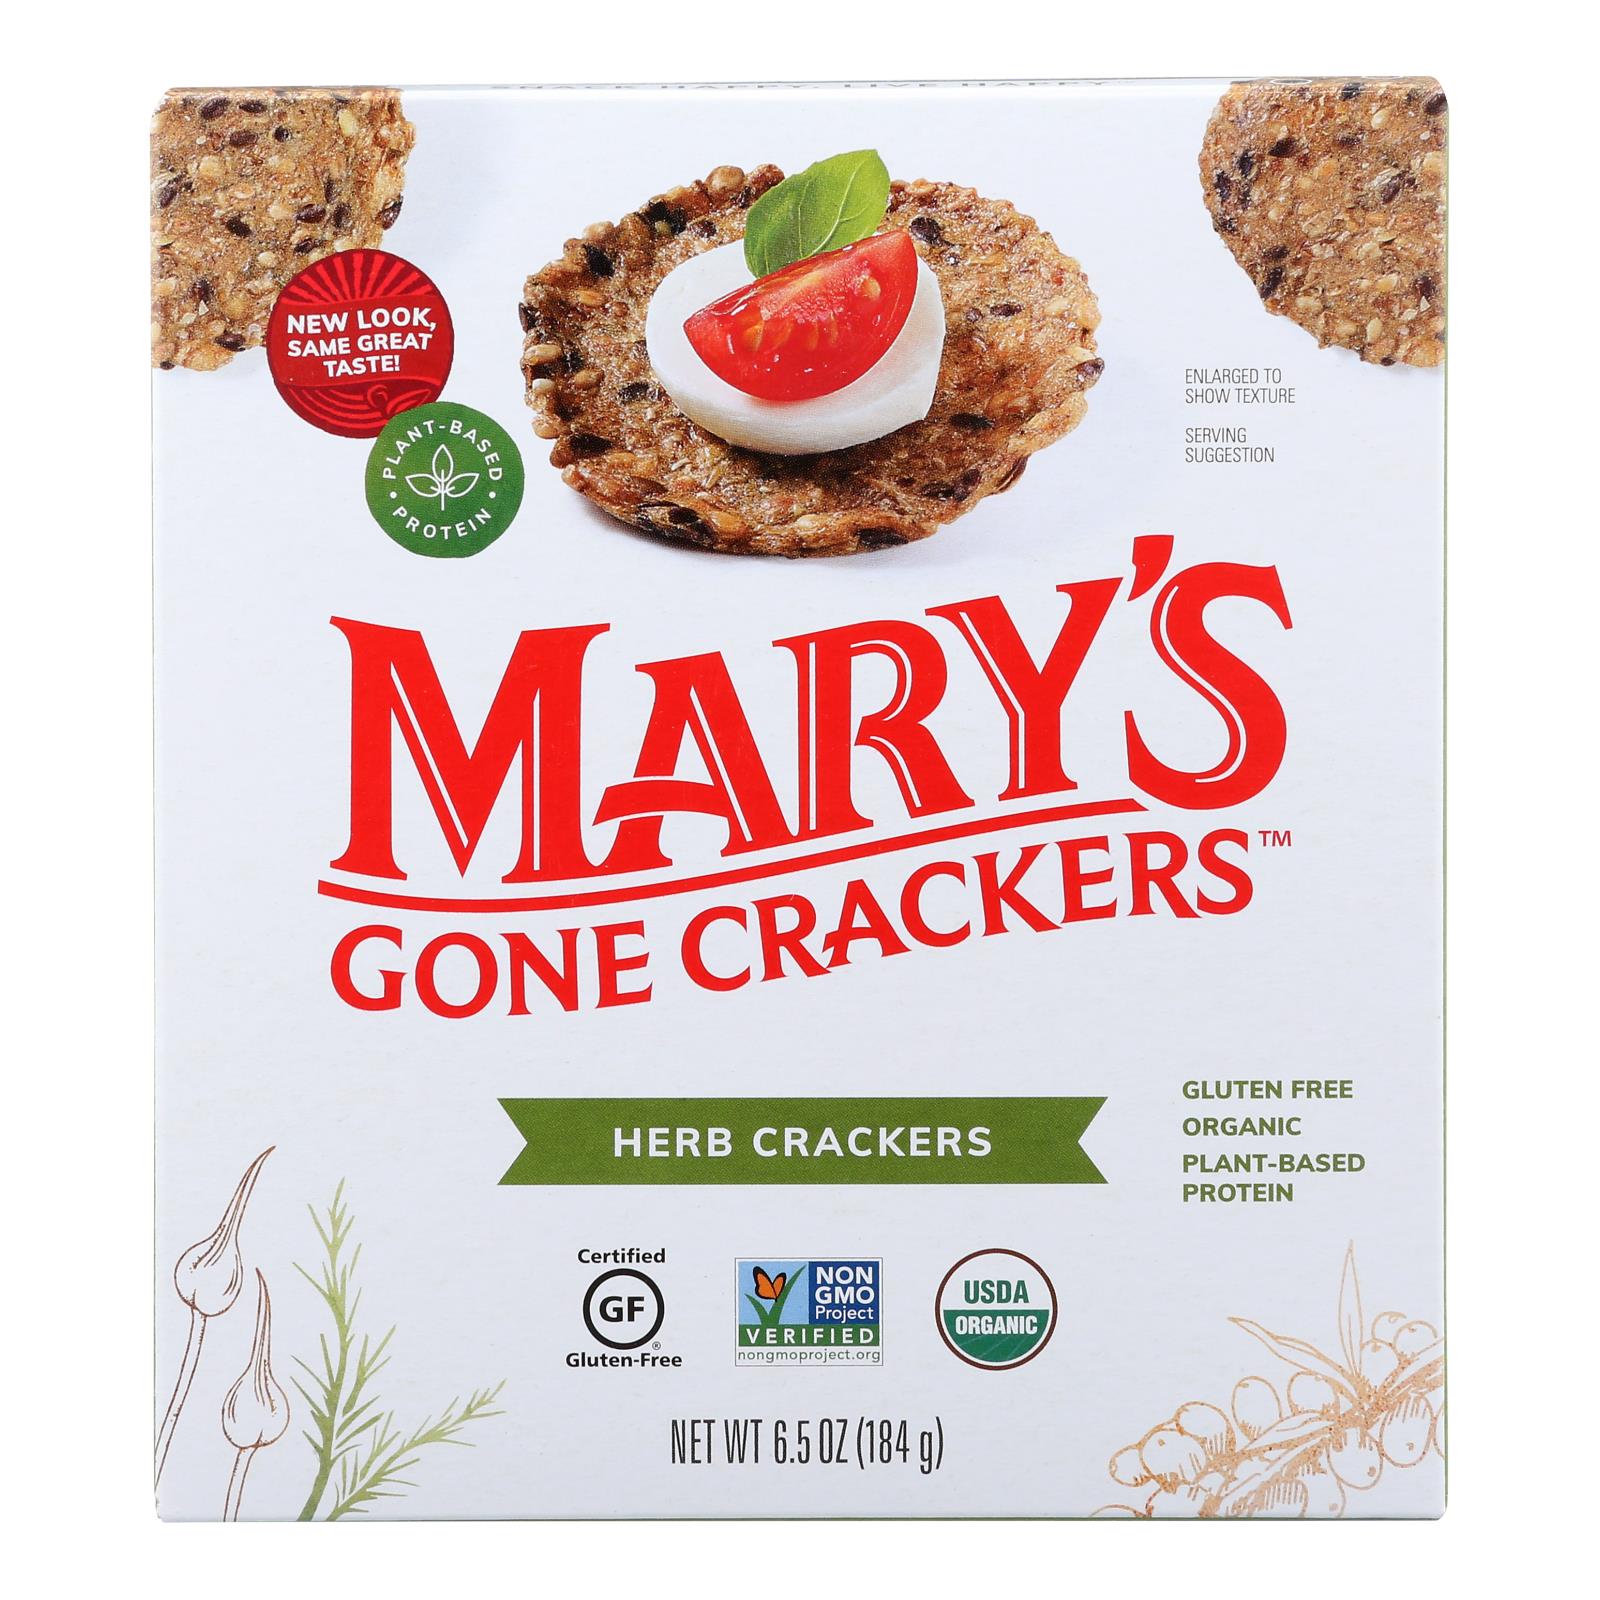 Craquelins de Mary's Gone, Mary's Gone Crackers Crackers aux herbes - Caisse de 6 - 6.5 OZ (paquet de 6)